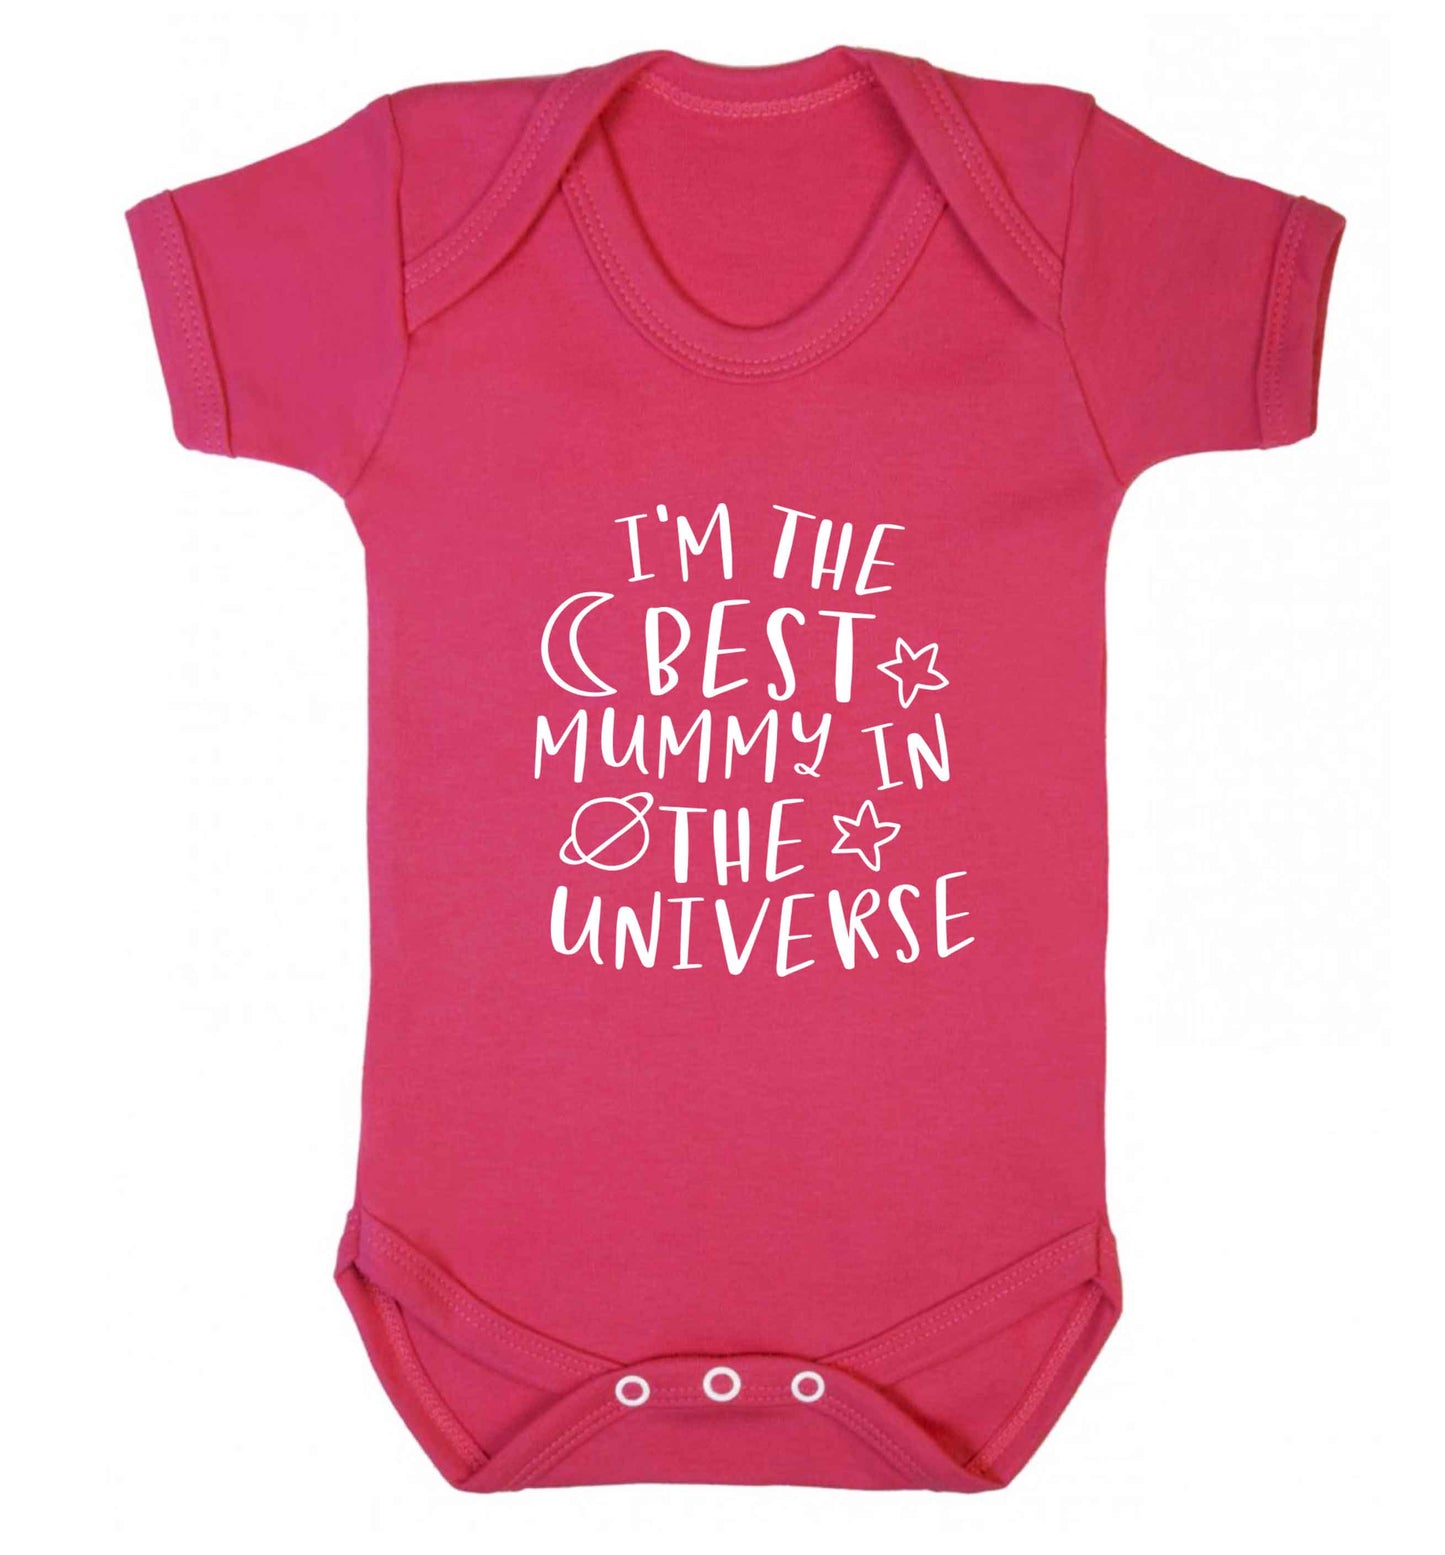 I'm the best mummy in the universe baby vest dark pink 18-24 months